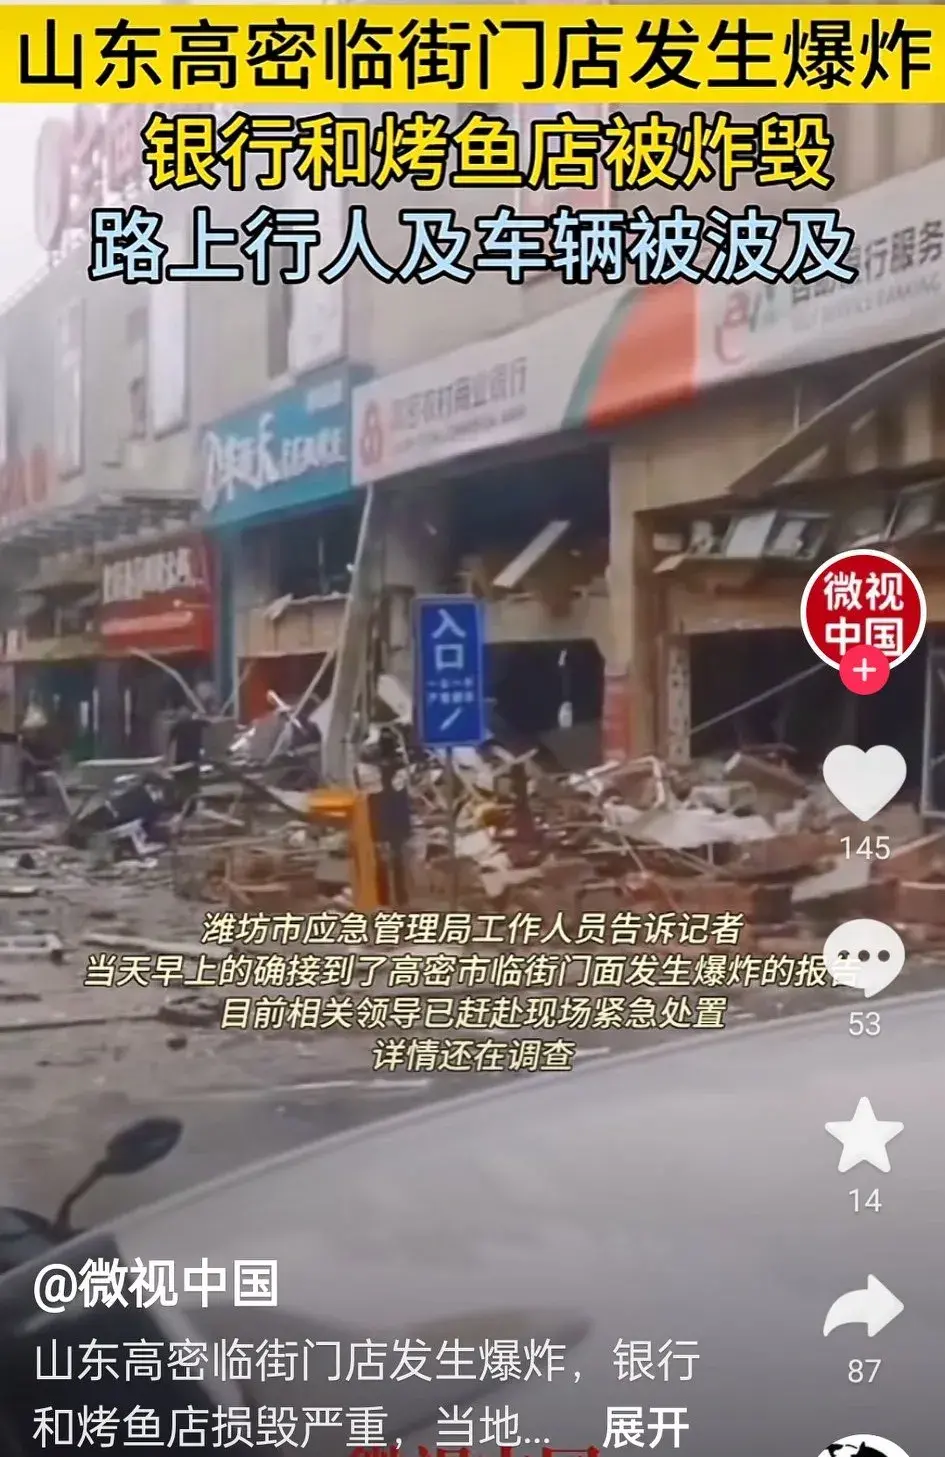 山东高密一烤鱼店发生重大爆炸事故，造成2死2伤，现场惨不忍睹。